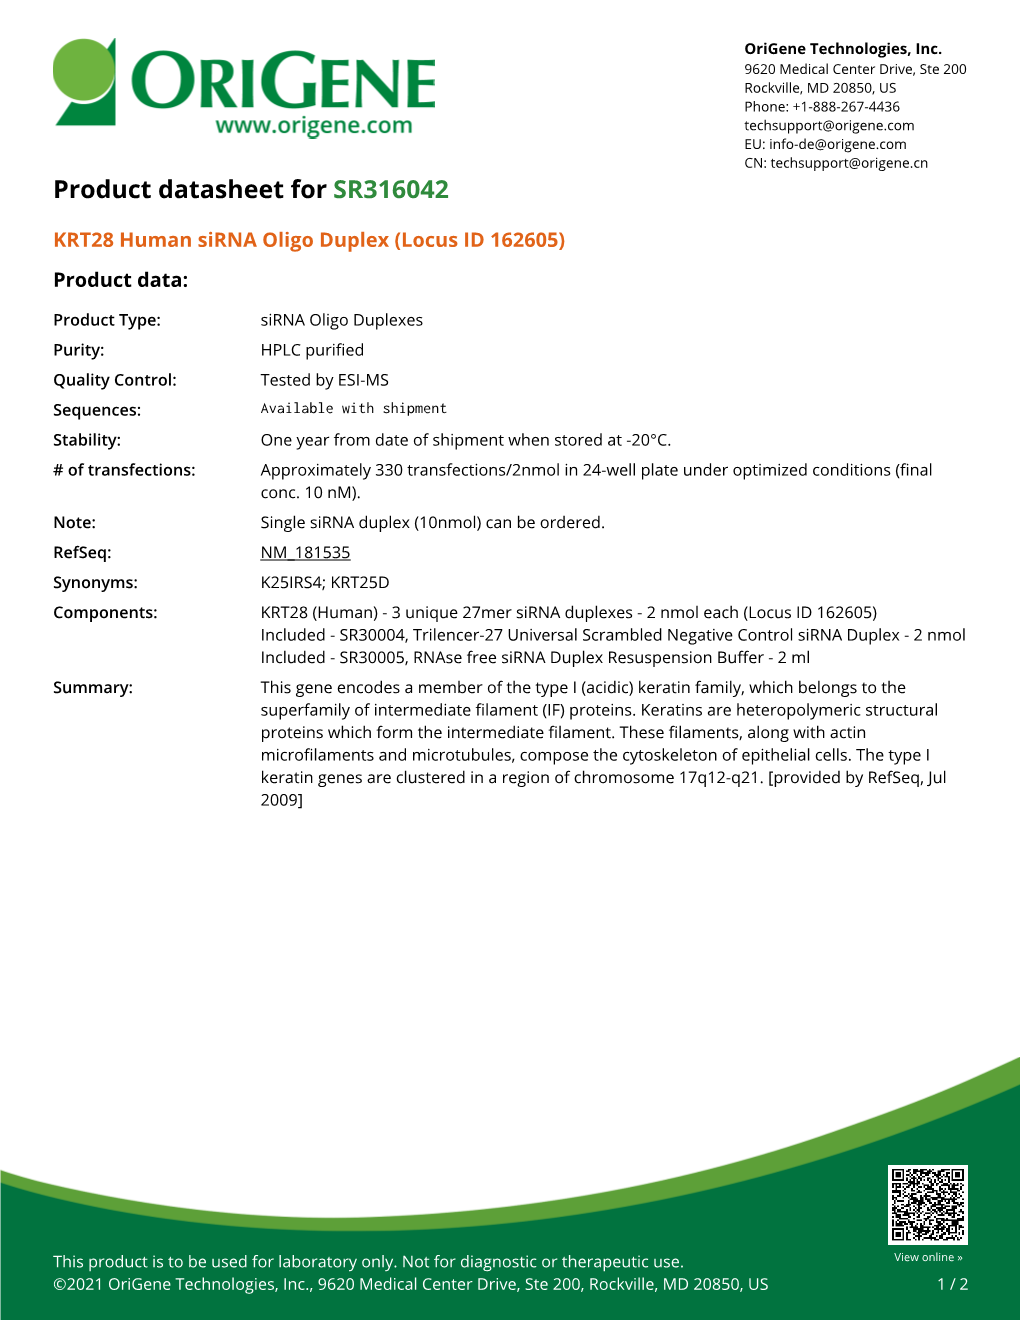 KRT28 Human Sirna Oligo Duplex (Locus ID 162605) Product Data